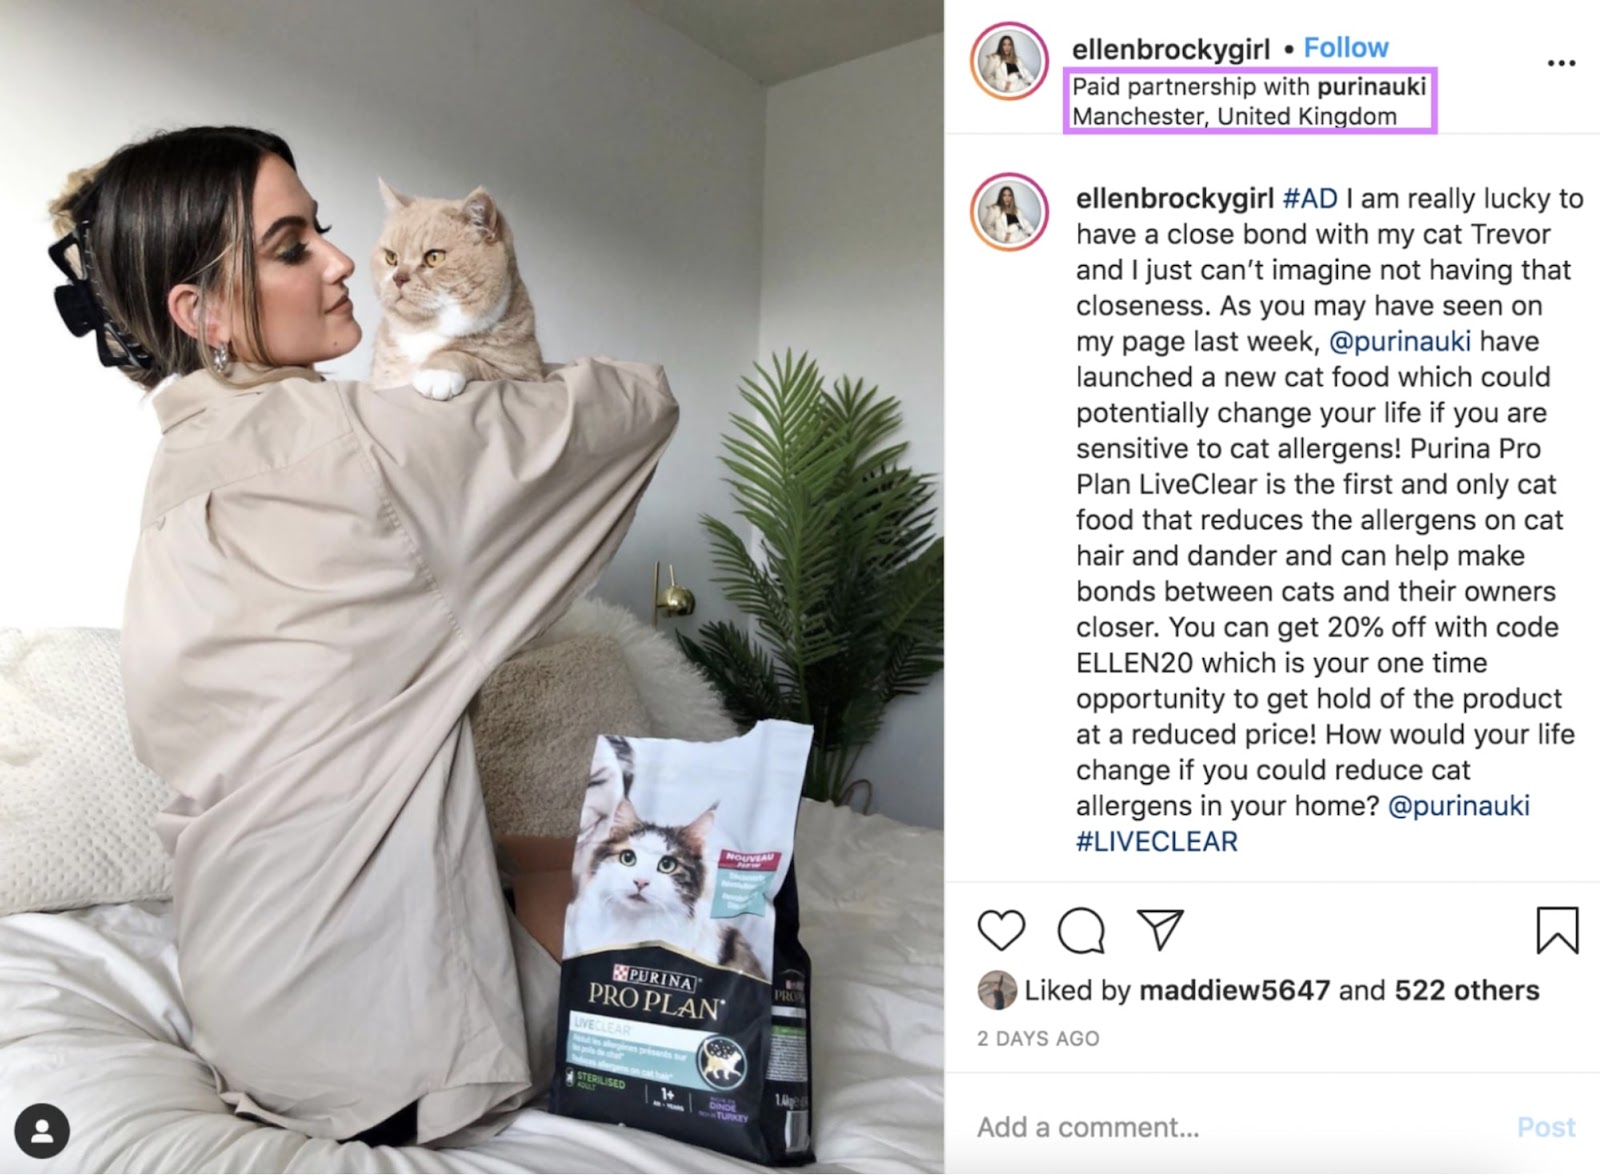 Ellen Brocky's Instagram post advertising Purina's cat food